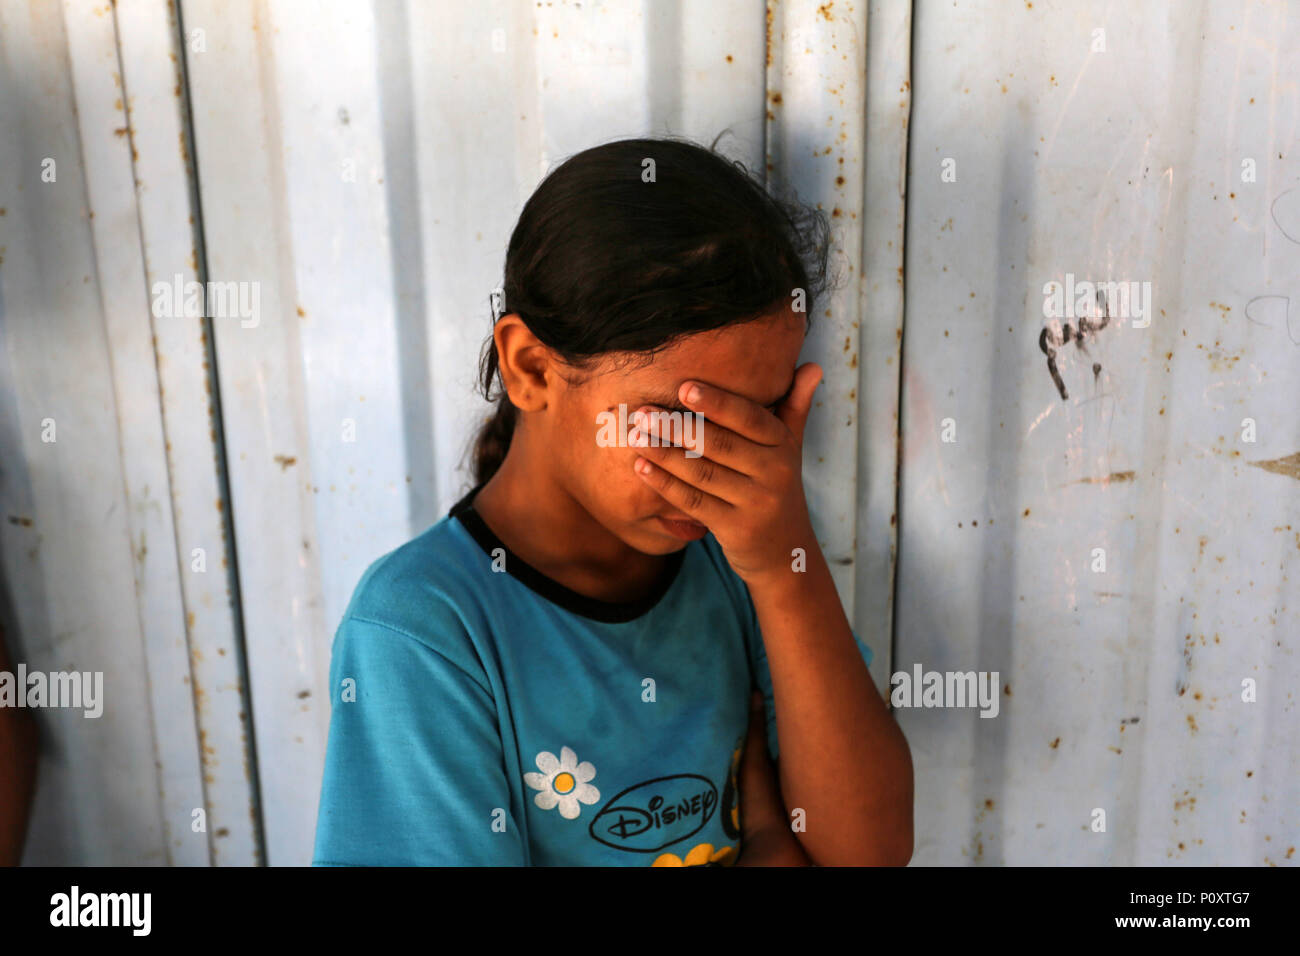 GAZA, TERRITOIRES PALESTINIENS - 9 juin 2018 Parents de peuple palestinien Haytham Al-Jamal, 14 ans, qui a été tué par des soldats israéliens lors de manifestations à la frontière Israel-Gaza, lors de ses funérailles à Rafah dans le sud de la bande de Gaza, le 9 juin 2018. © Abed Rahim Khatib / éveil / Alamy Live News Banque D'Images